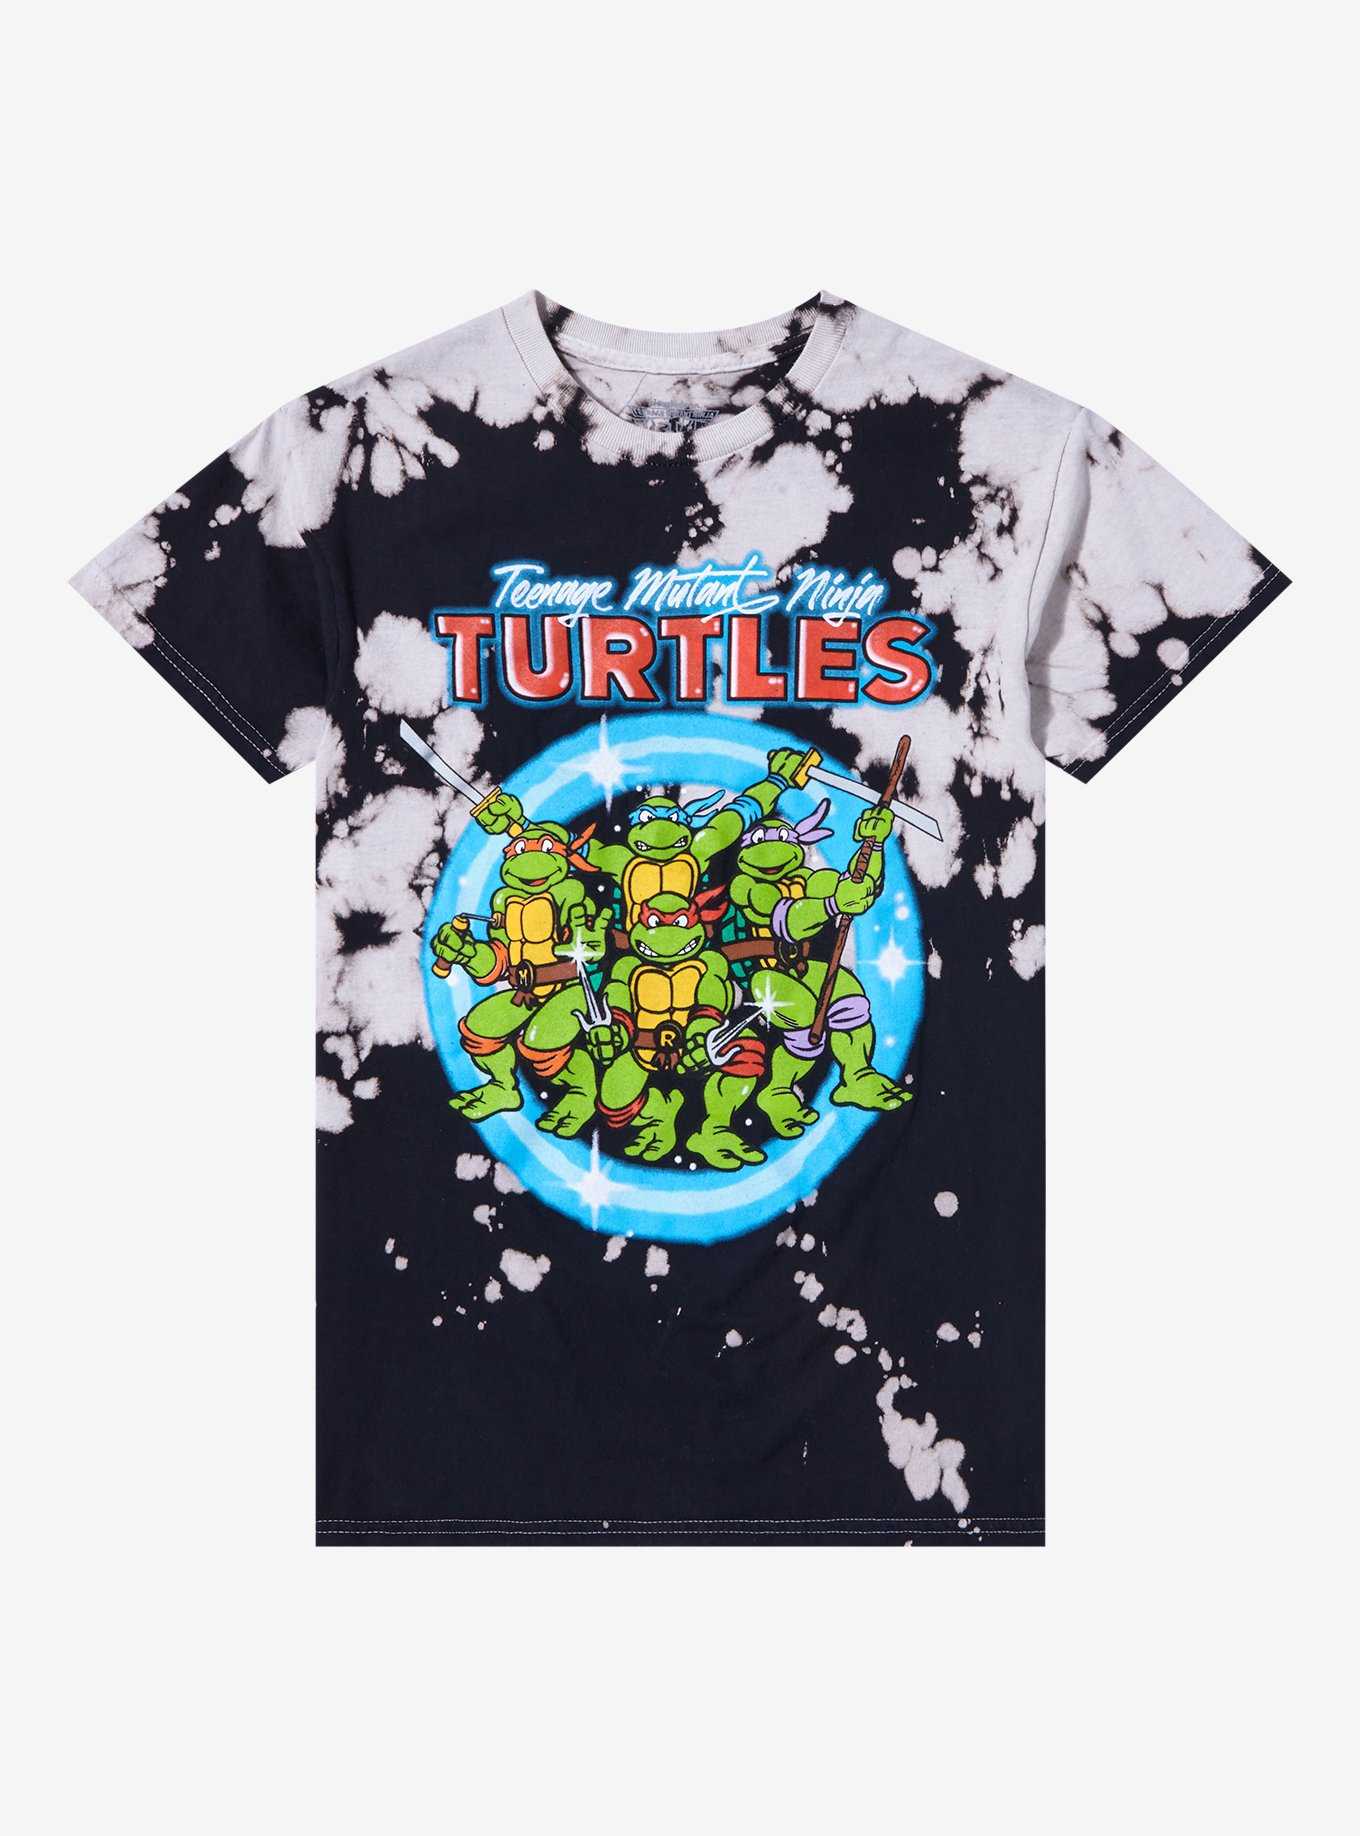 Teenage mutant ninja turtles  Leggings for Sale by shining-art